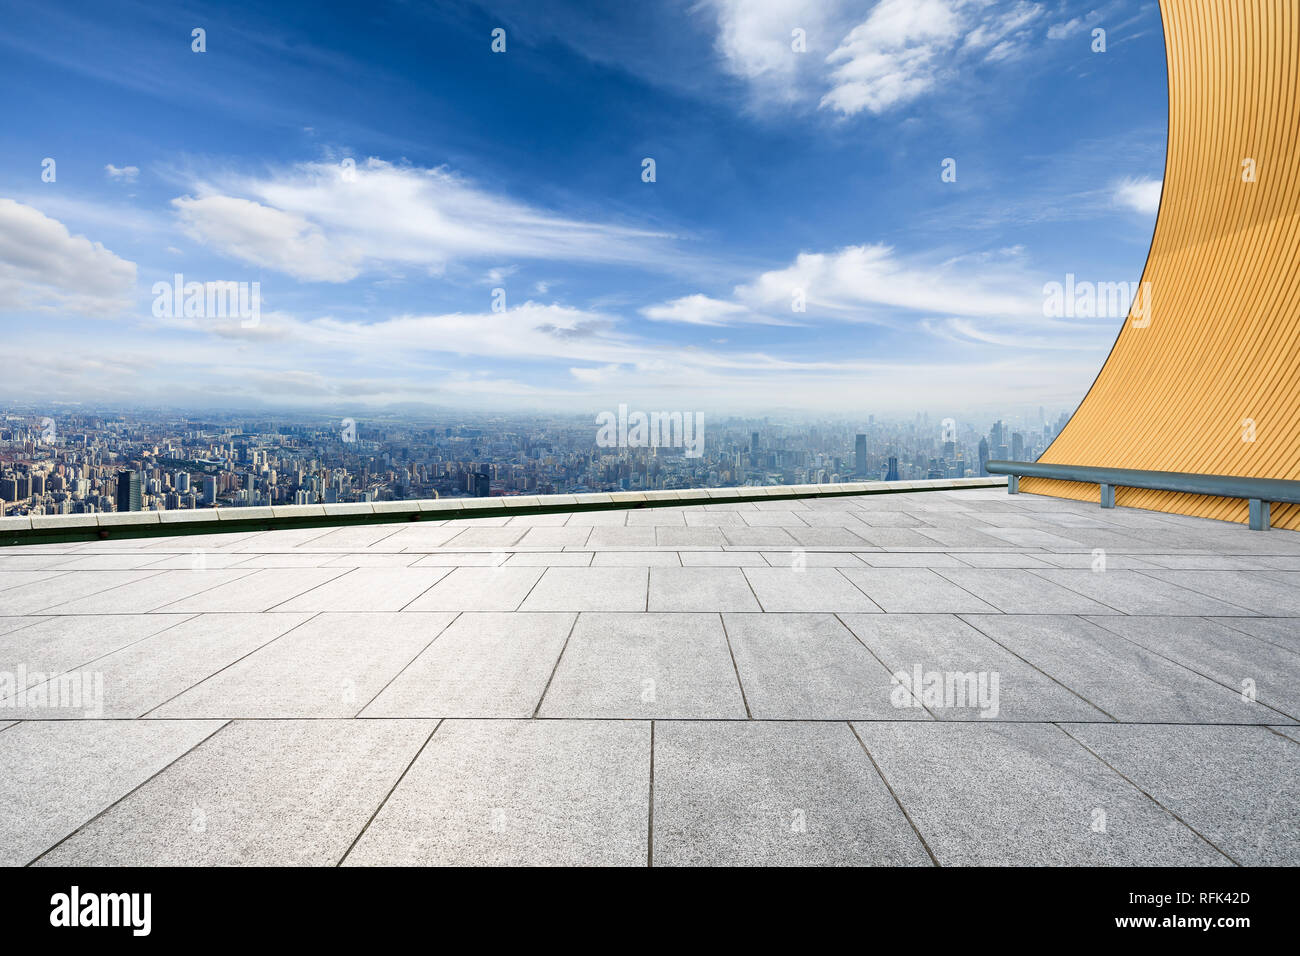 Vue panoramique sur les toits de la ville et des bâtiments avec sol carré vide à Shanghai, high angle view Banque D'Images